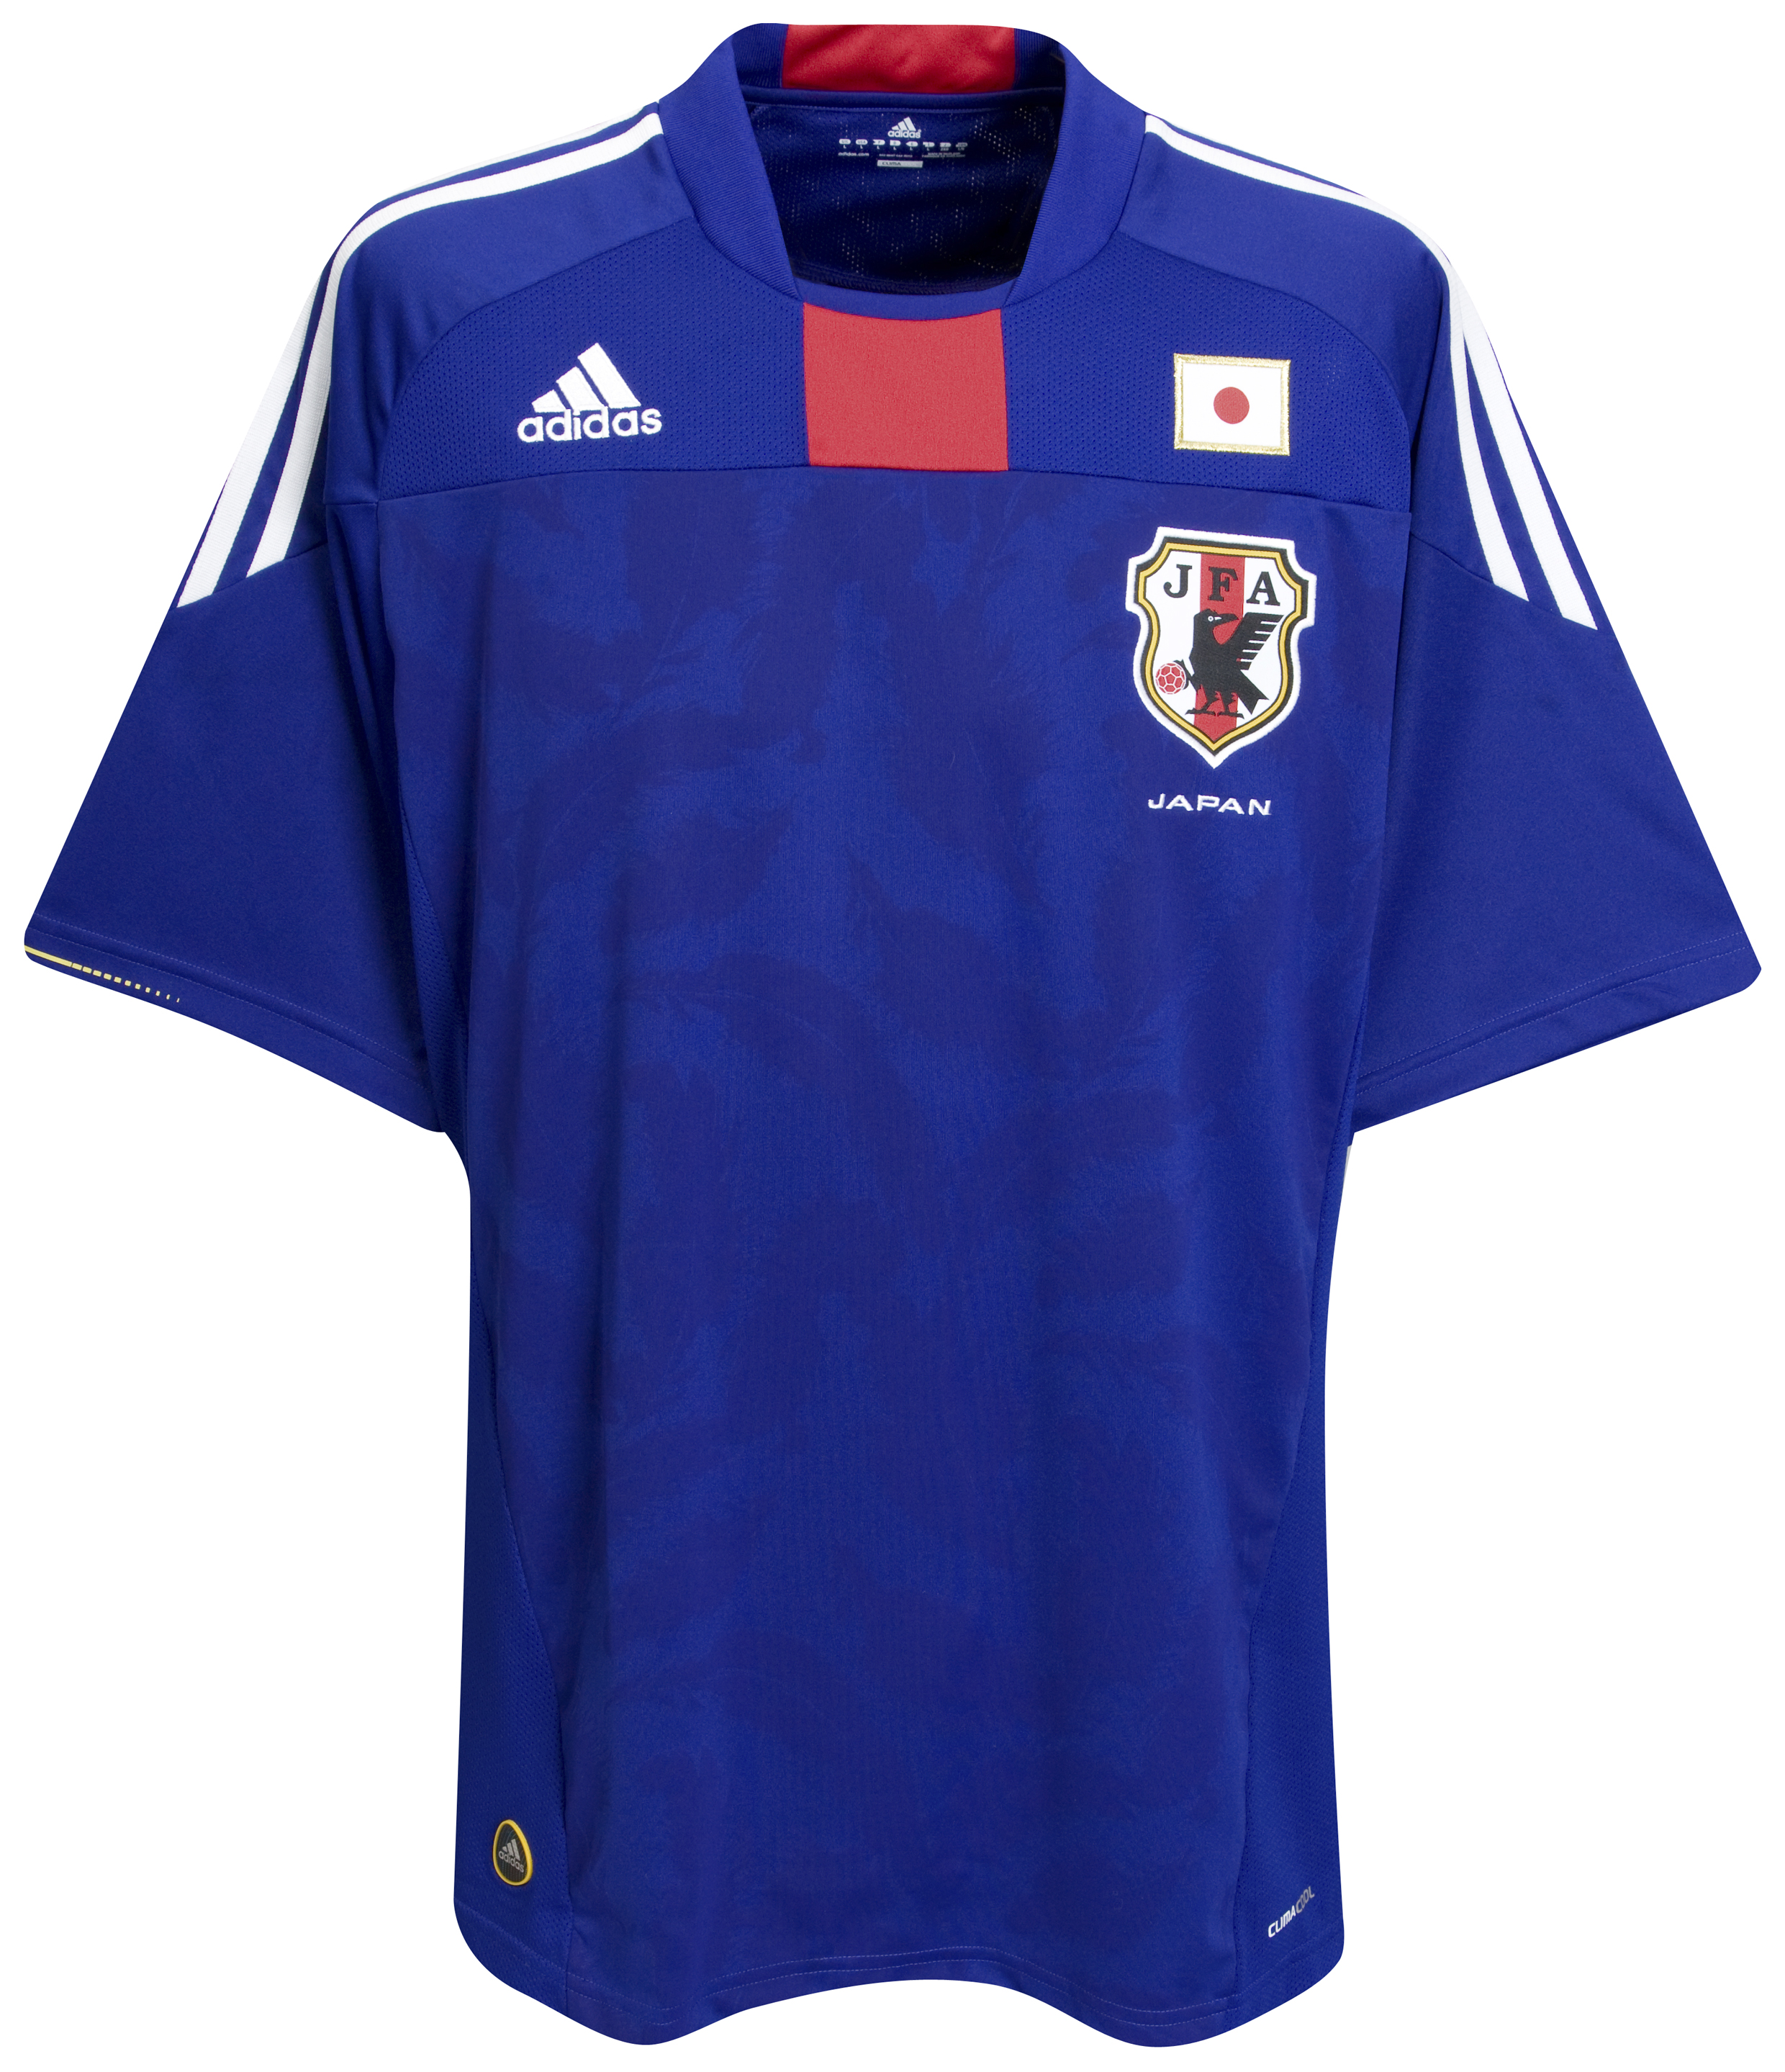 الملابس النهائيه لكأس العالم (2010)بجنوب افريقيا Kb-63744